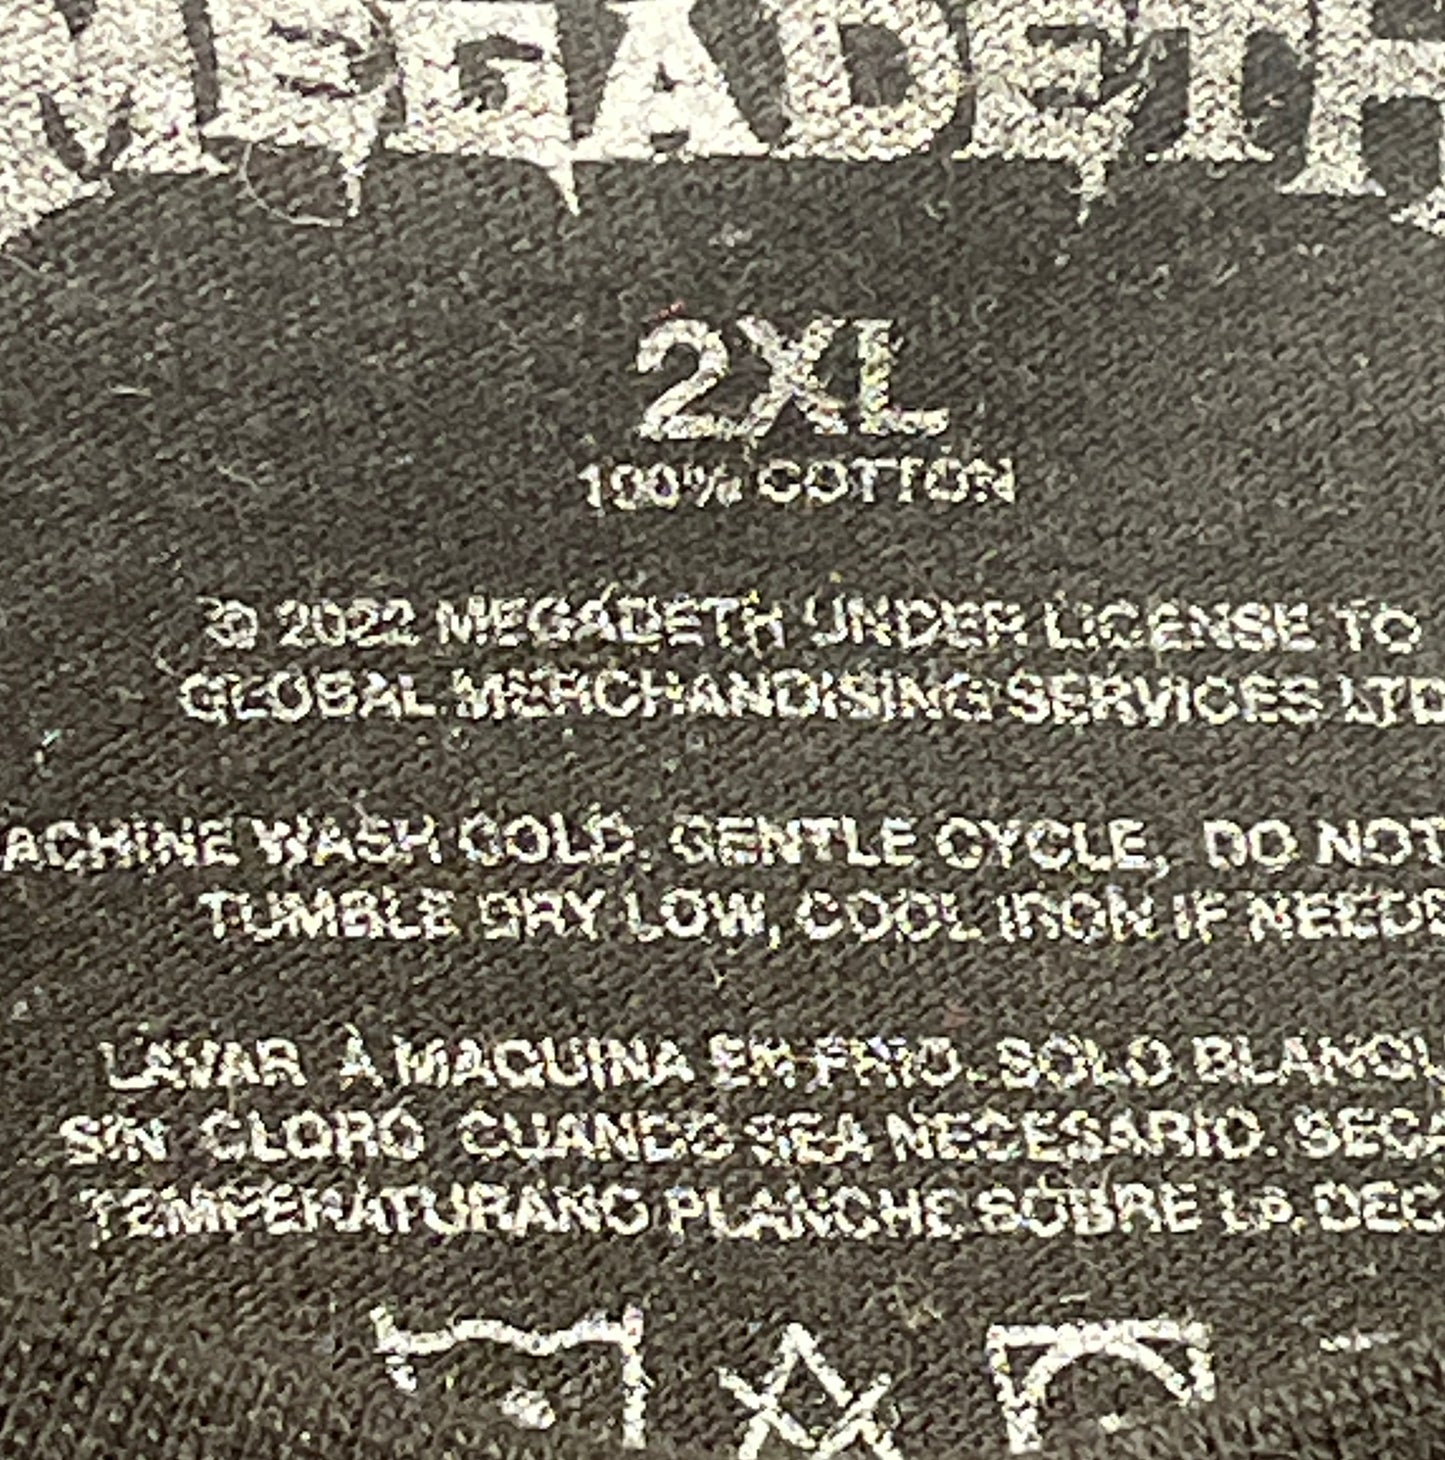 Vintage Megadeth T-Shirt Epic Band